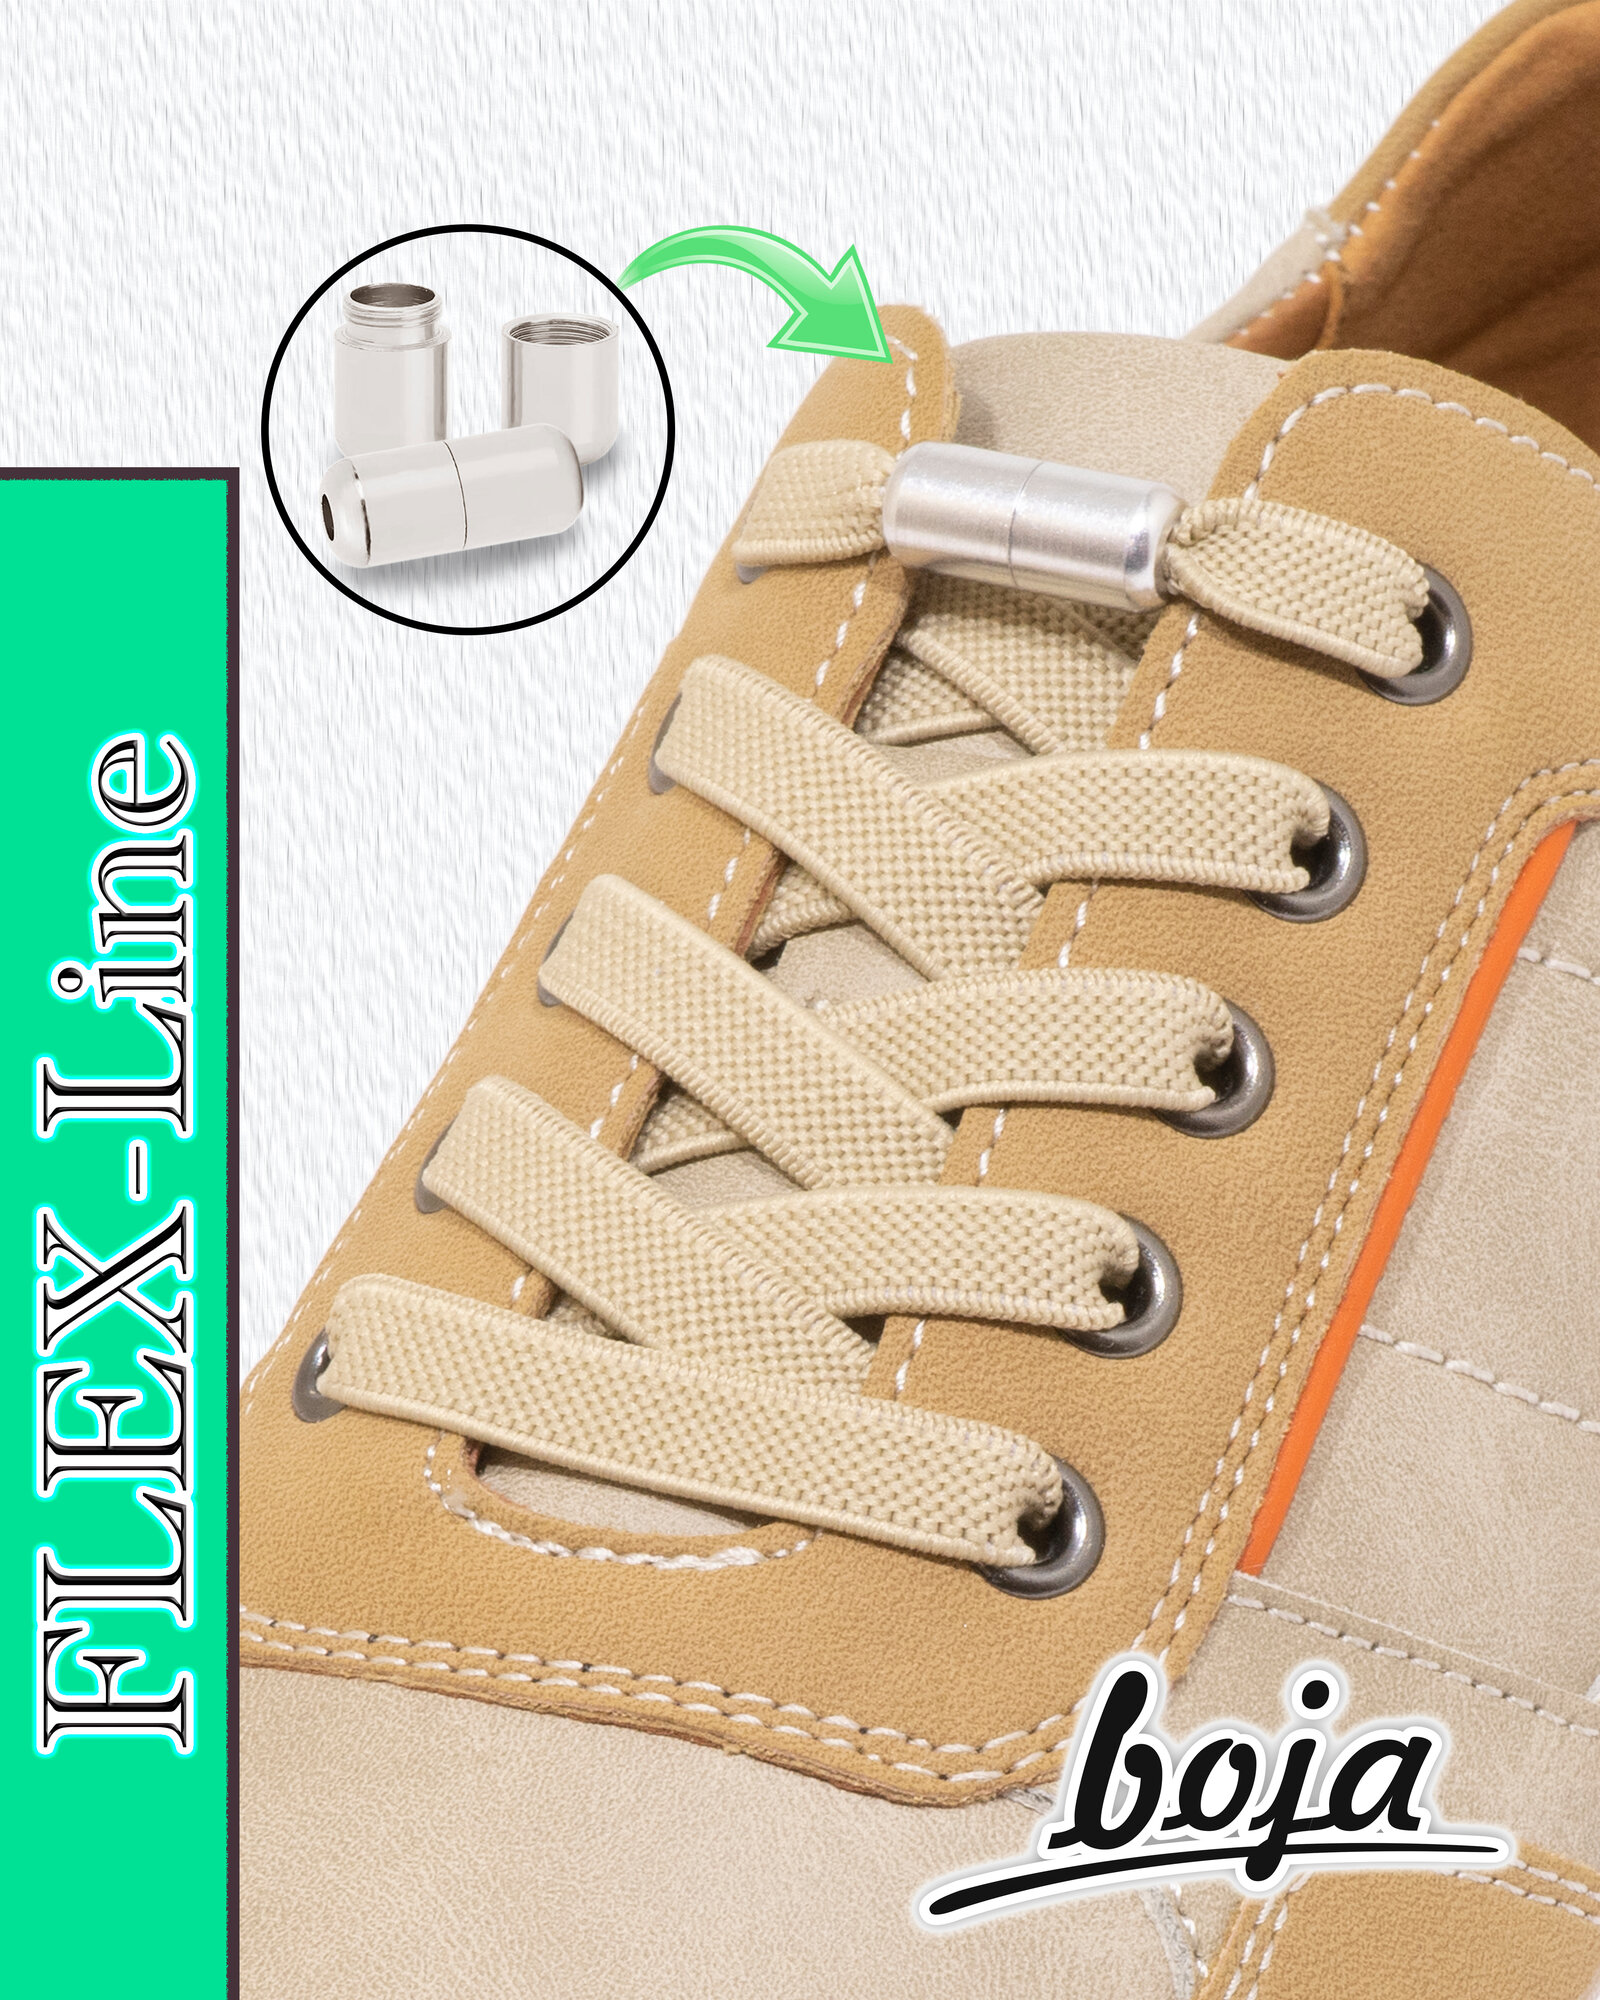 Шнурки для обуви BOJA (FLEX), эластичные с фиксатором, плоские, бежевые, для кроссовок, кед, ботинок, сапог